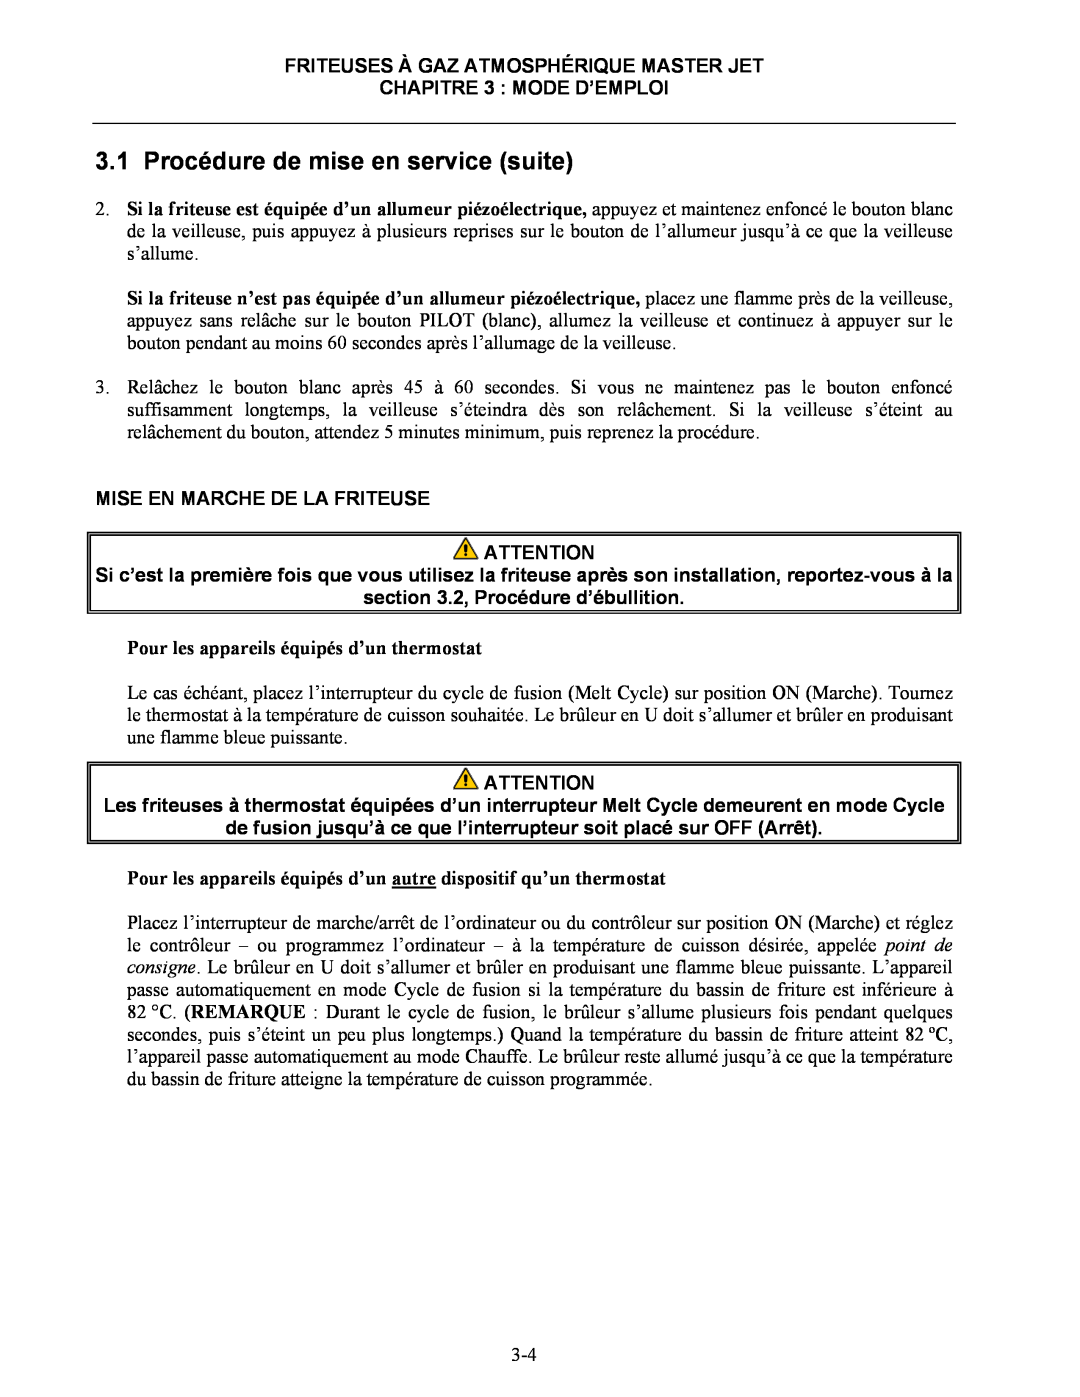 Frymaster CF manual Mise En Marche De La Friteuse, 2, Procédure d’ébullition, Pour les appareils équipés d’un thermostat 